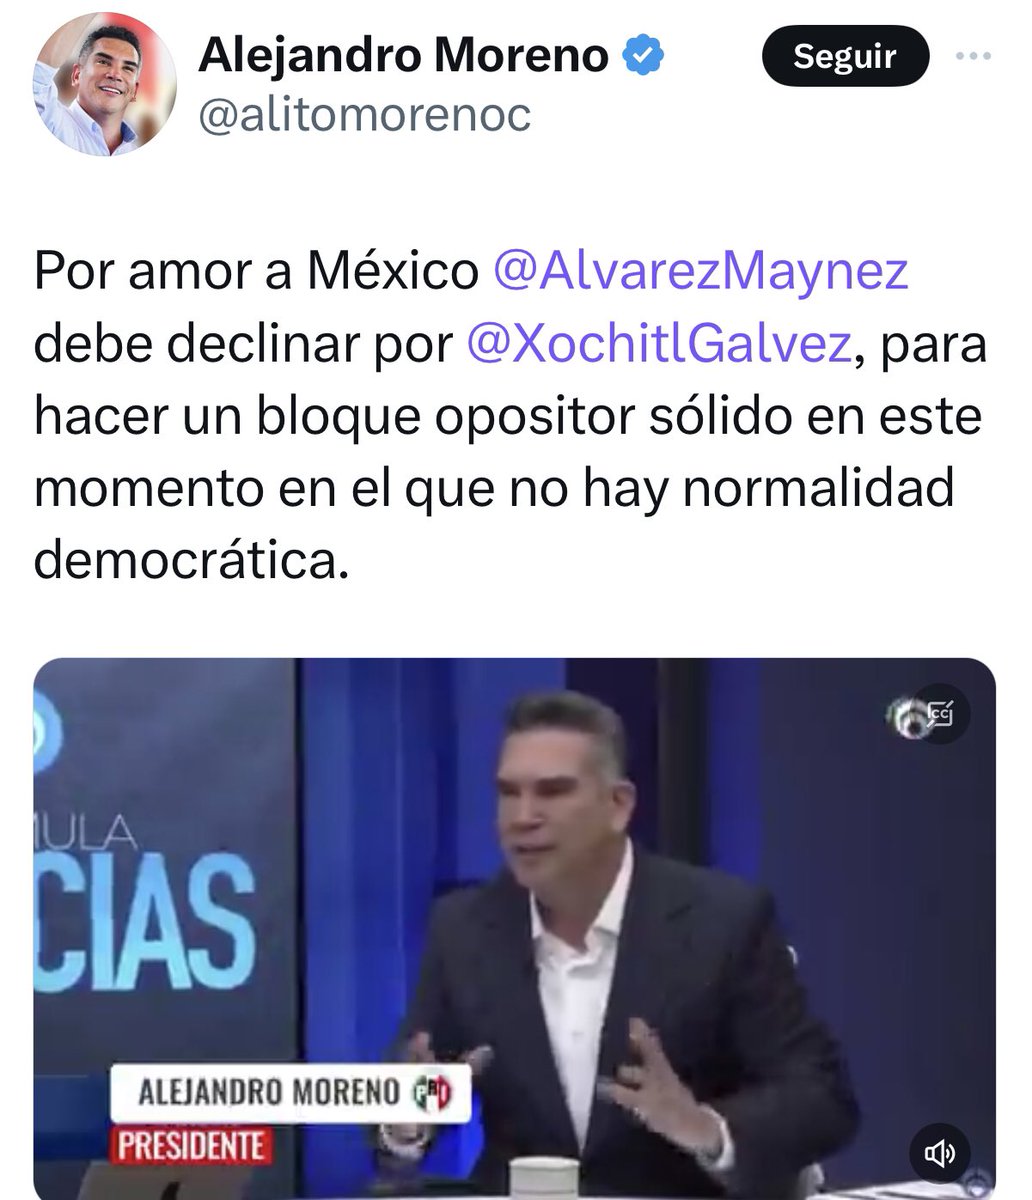 La desesperación de verse superados por @AlvarezMaynez y pasar a ser el tercer lugar por la presidencia obliga a @alitomorenoc a pedir desesperadamente que decline a favor de su candidata @XochitlGalvez ¿se le olvida que #Mainez es compadre de @samuel_garcias al que los